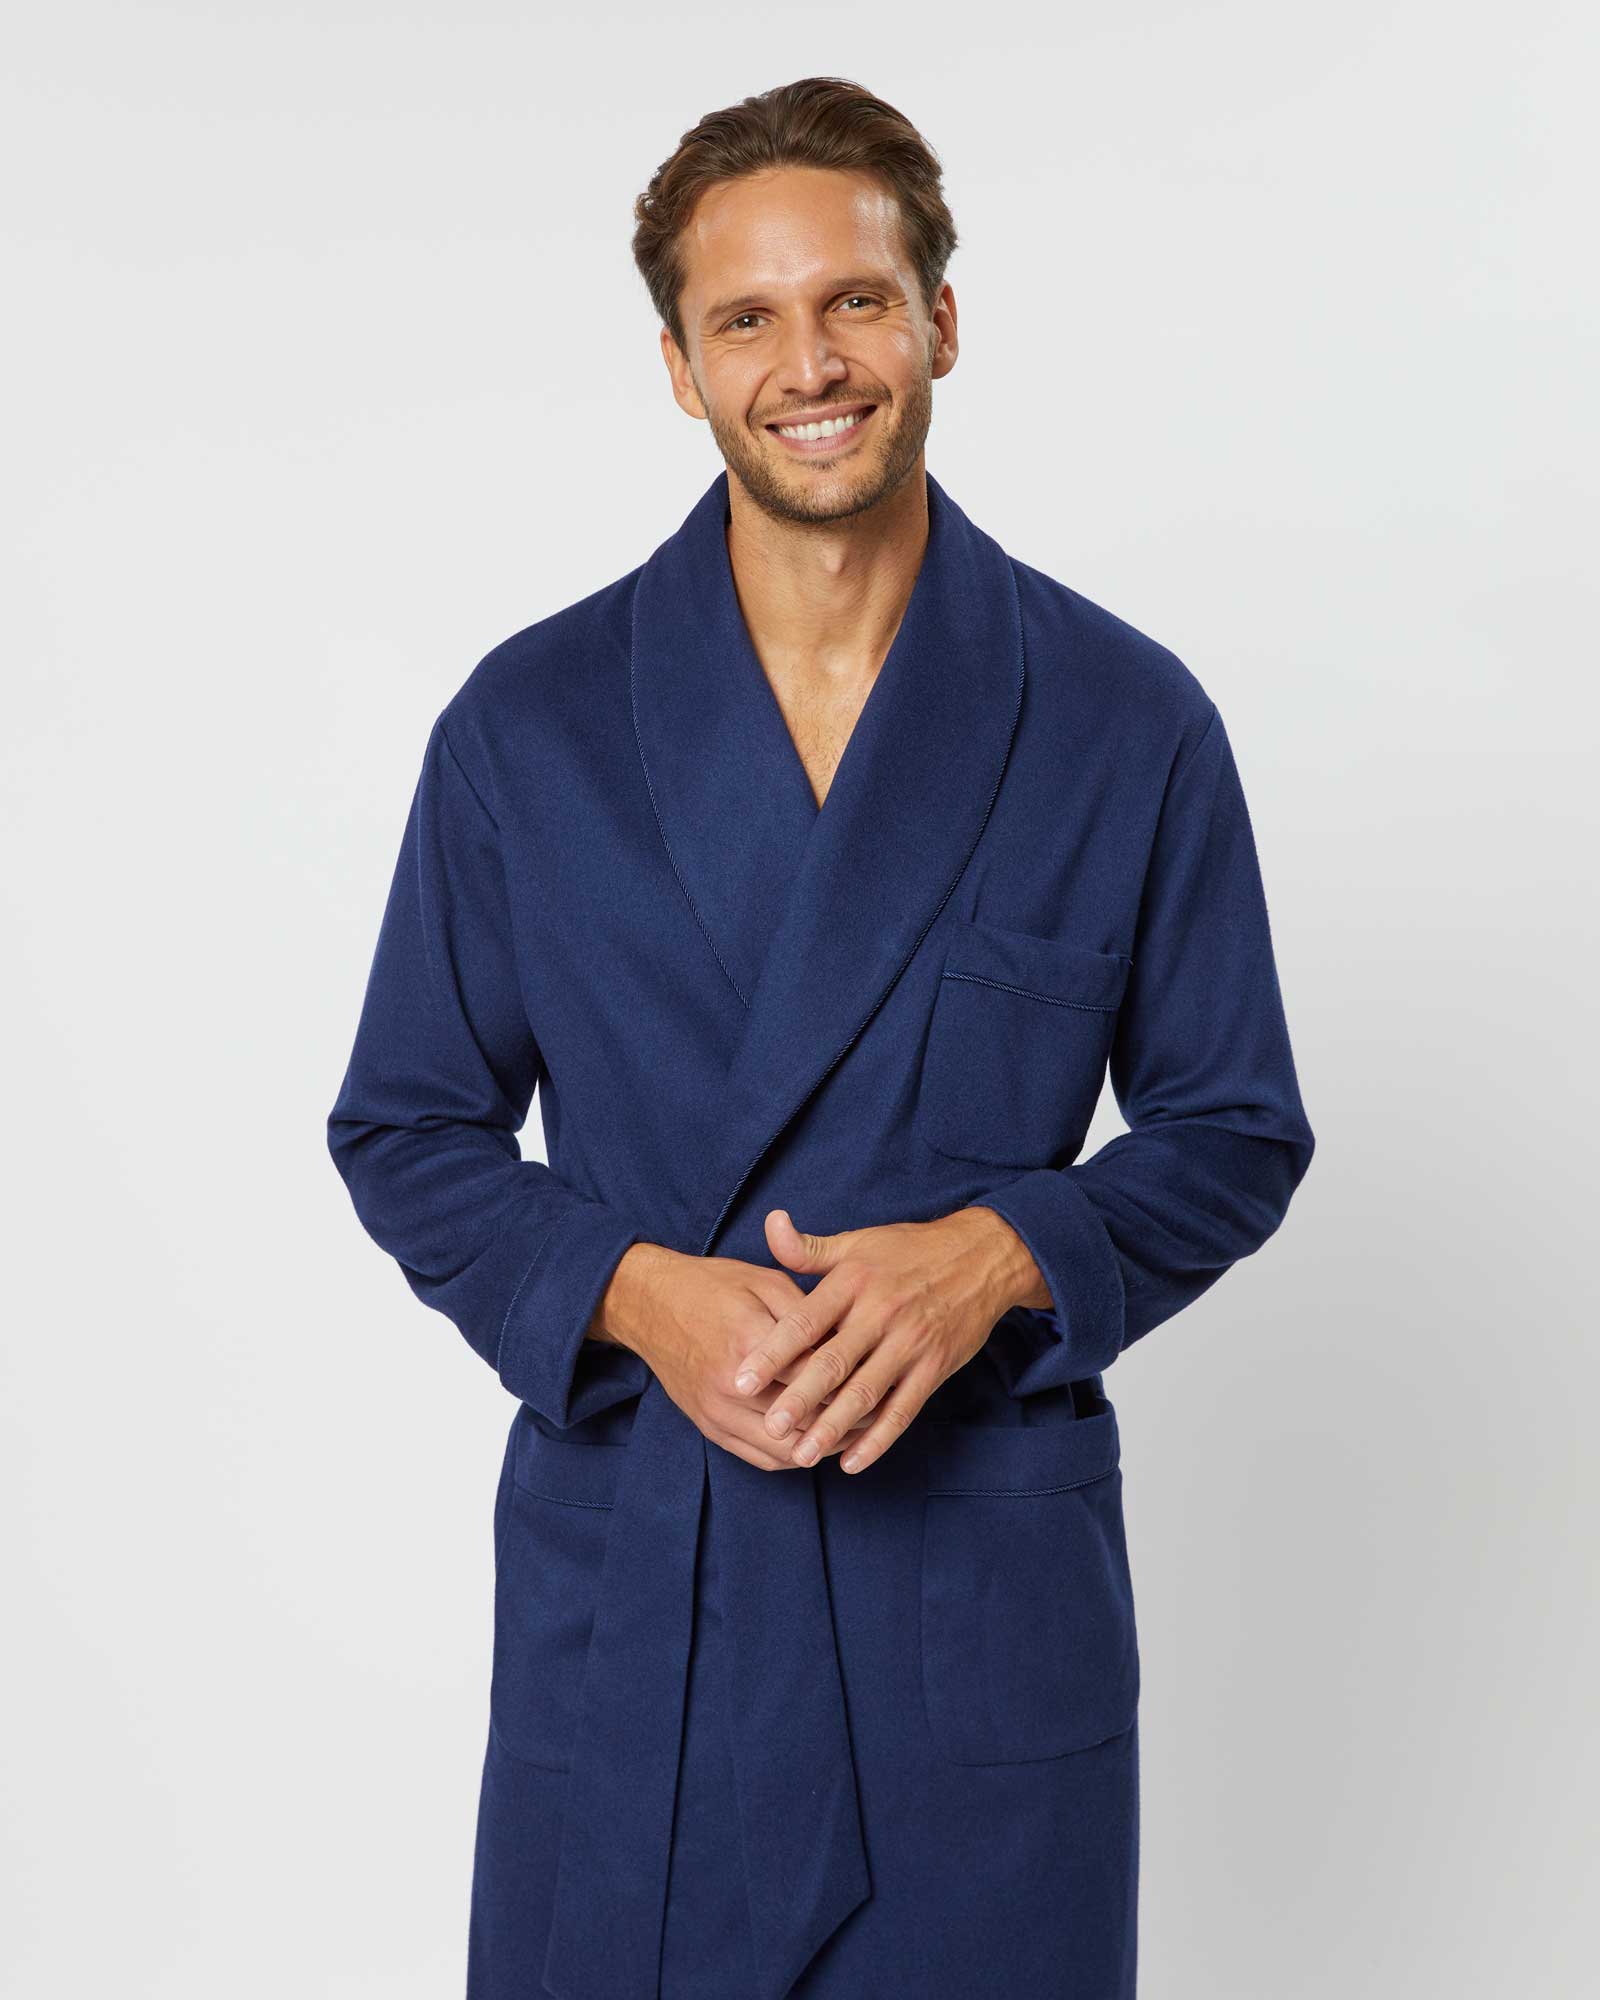 Buy Linen Robe for Men, Natural Loungewear, Dark Blue Dressing Gown,  Handmade Bathrobe, Men's Robe, Spa Robe, Housecoat, Gift for Him Online in  India - Etsy